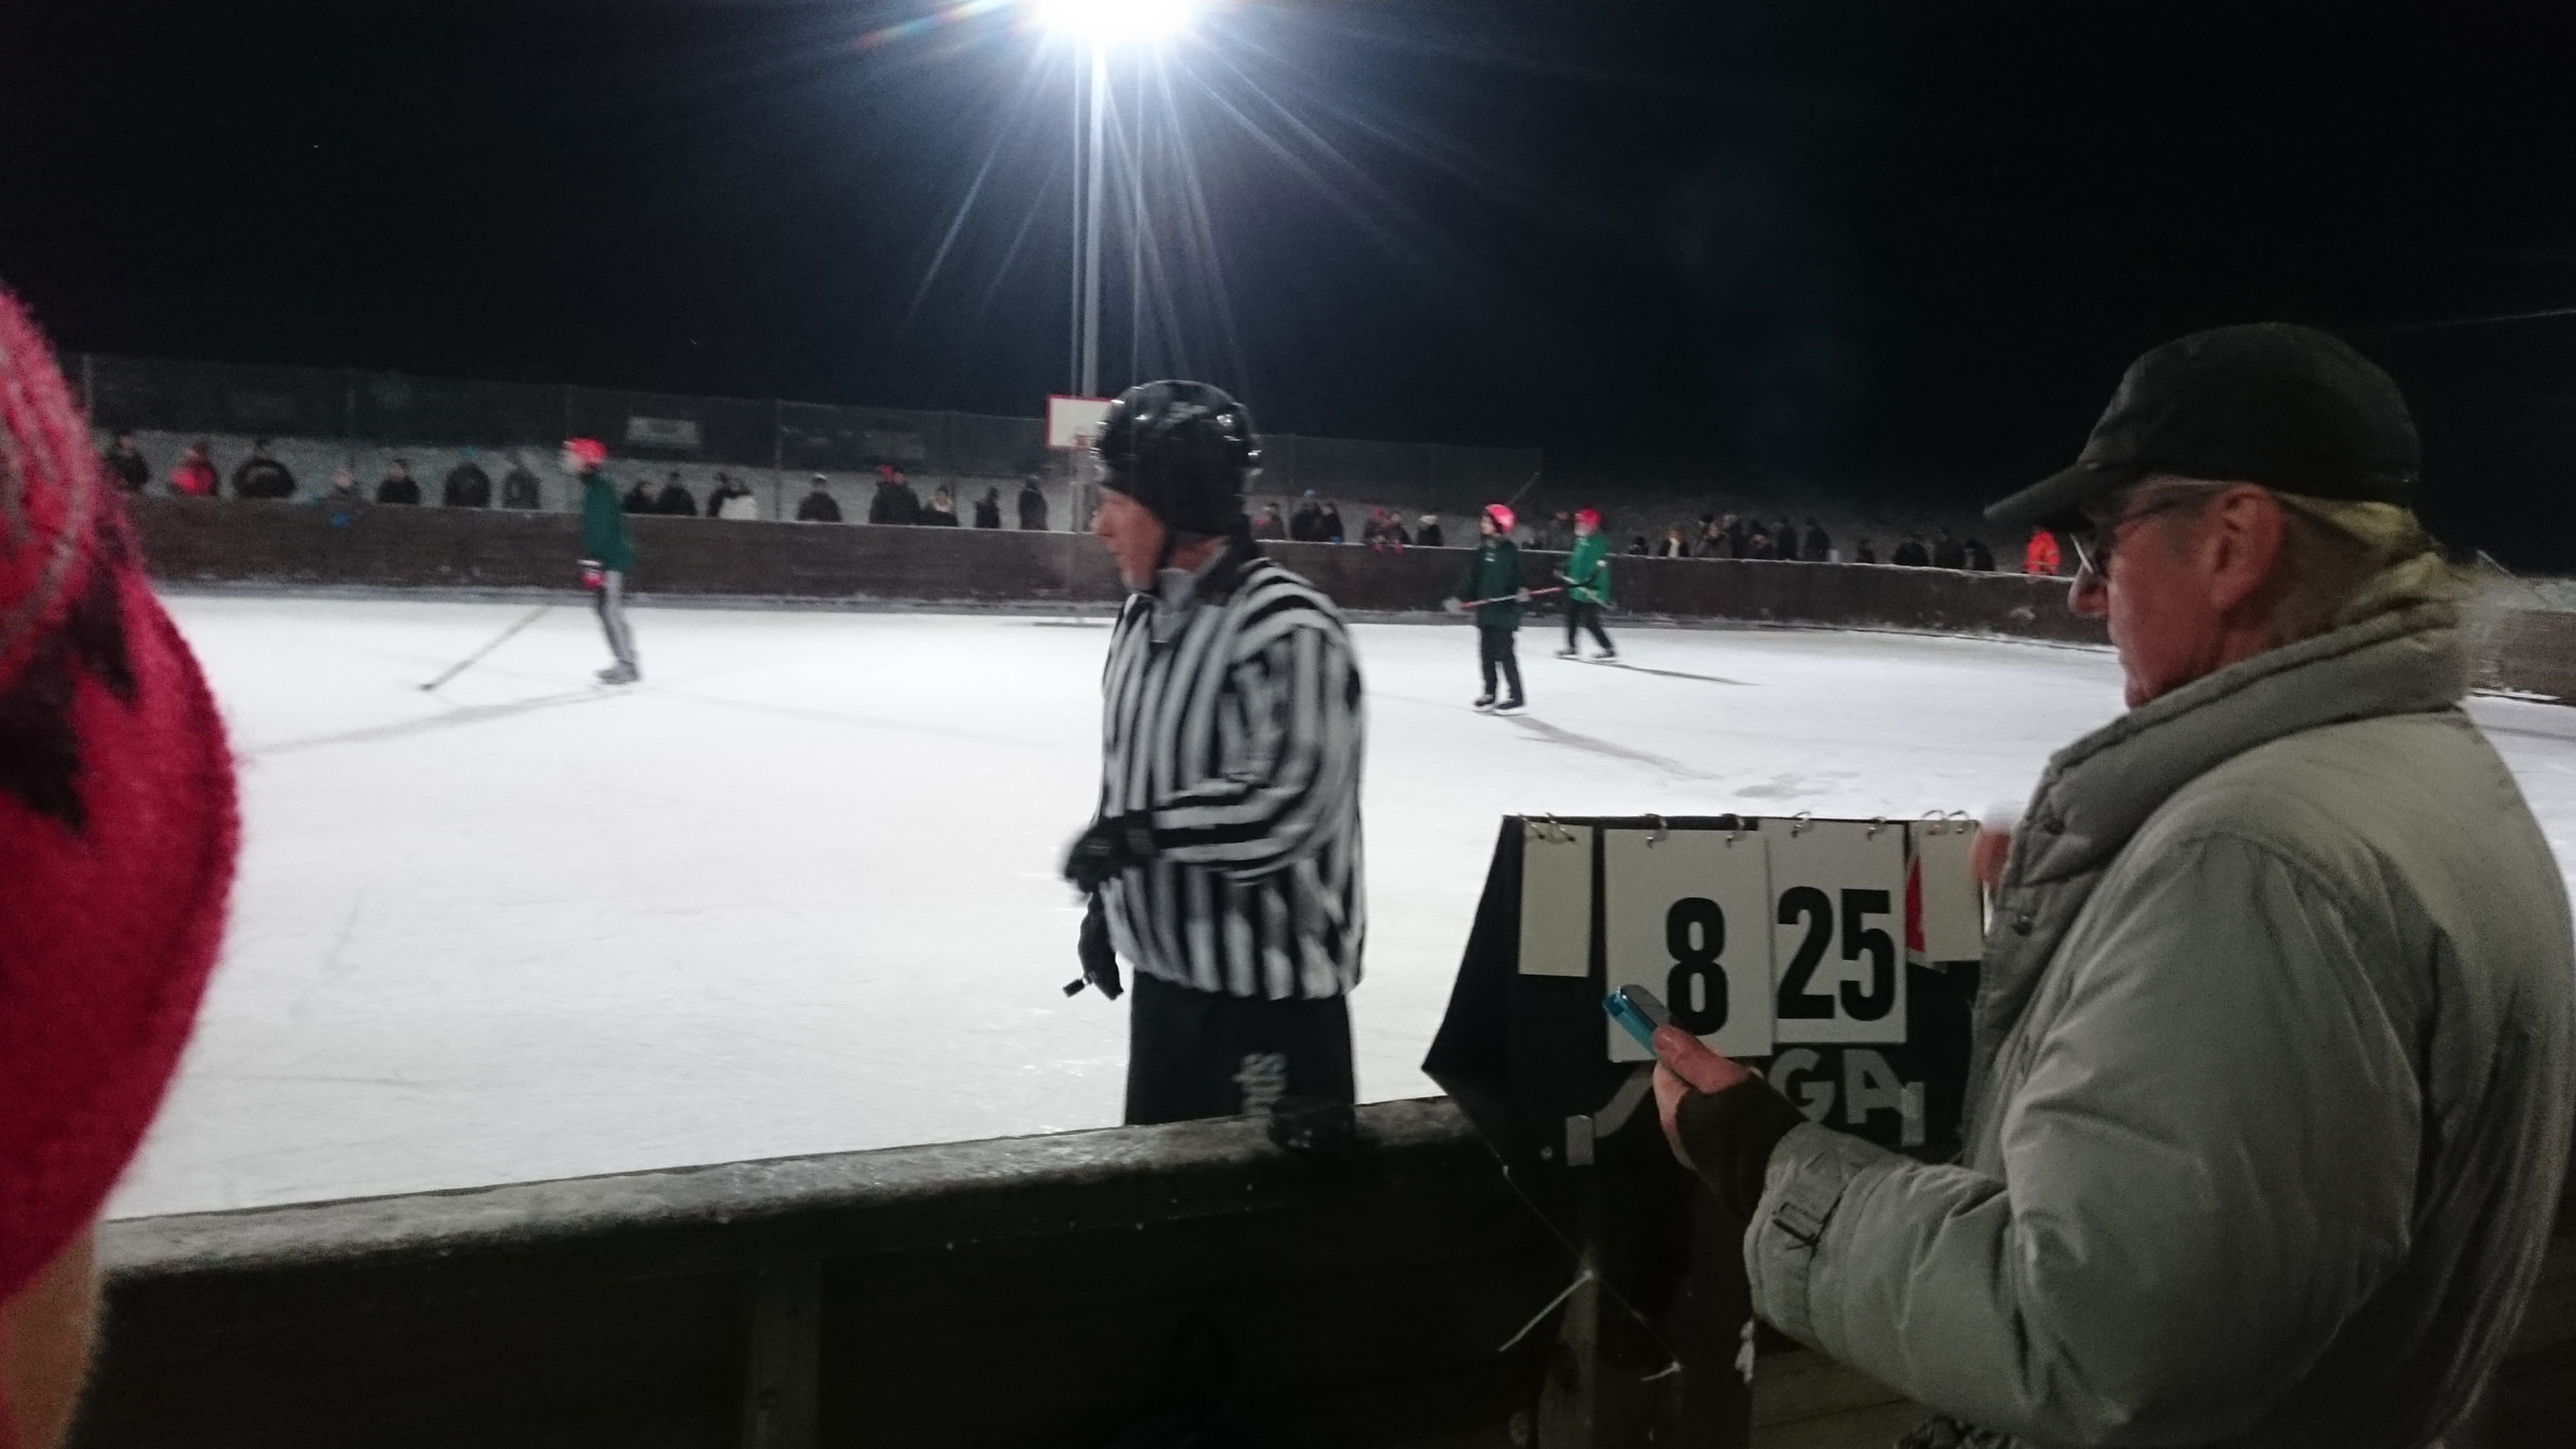 Hockeyderbyt mellan Brösarp och Maglehem slutade med en förkrossande hemmaseger för Brösarp, 25-8.